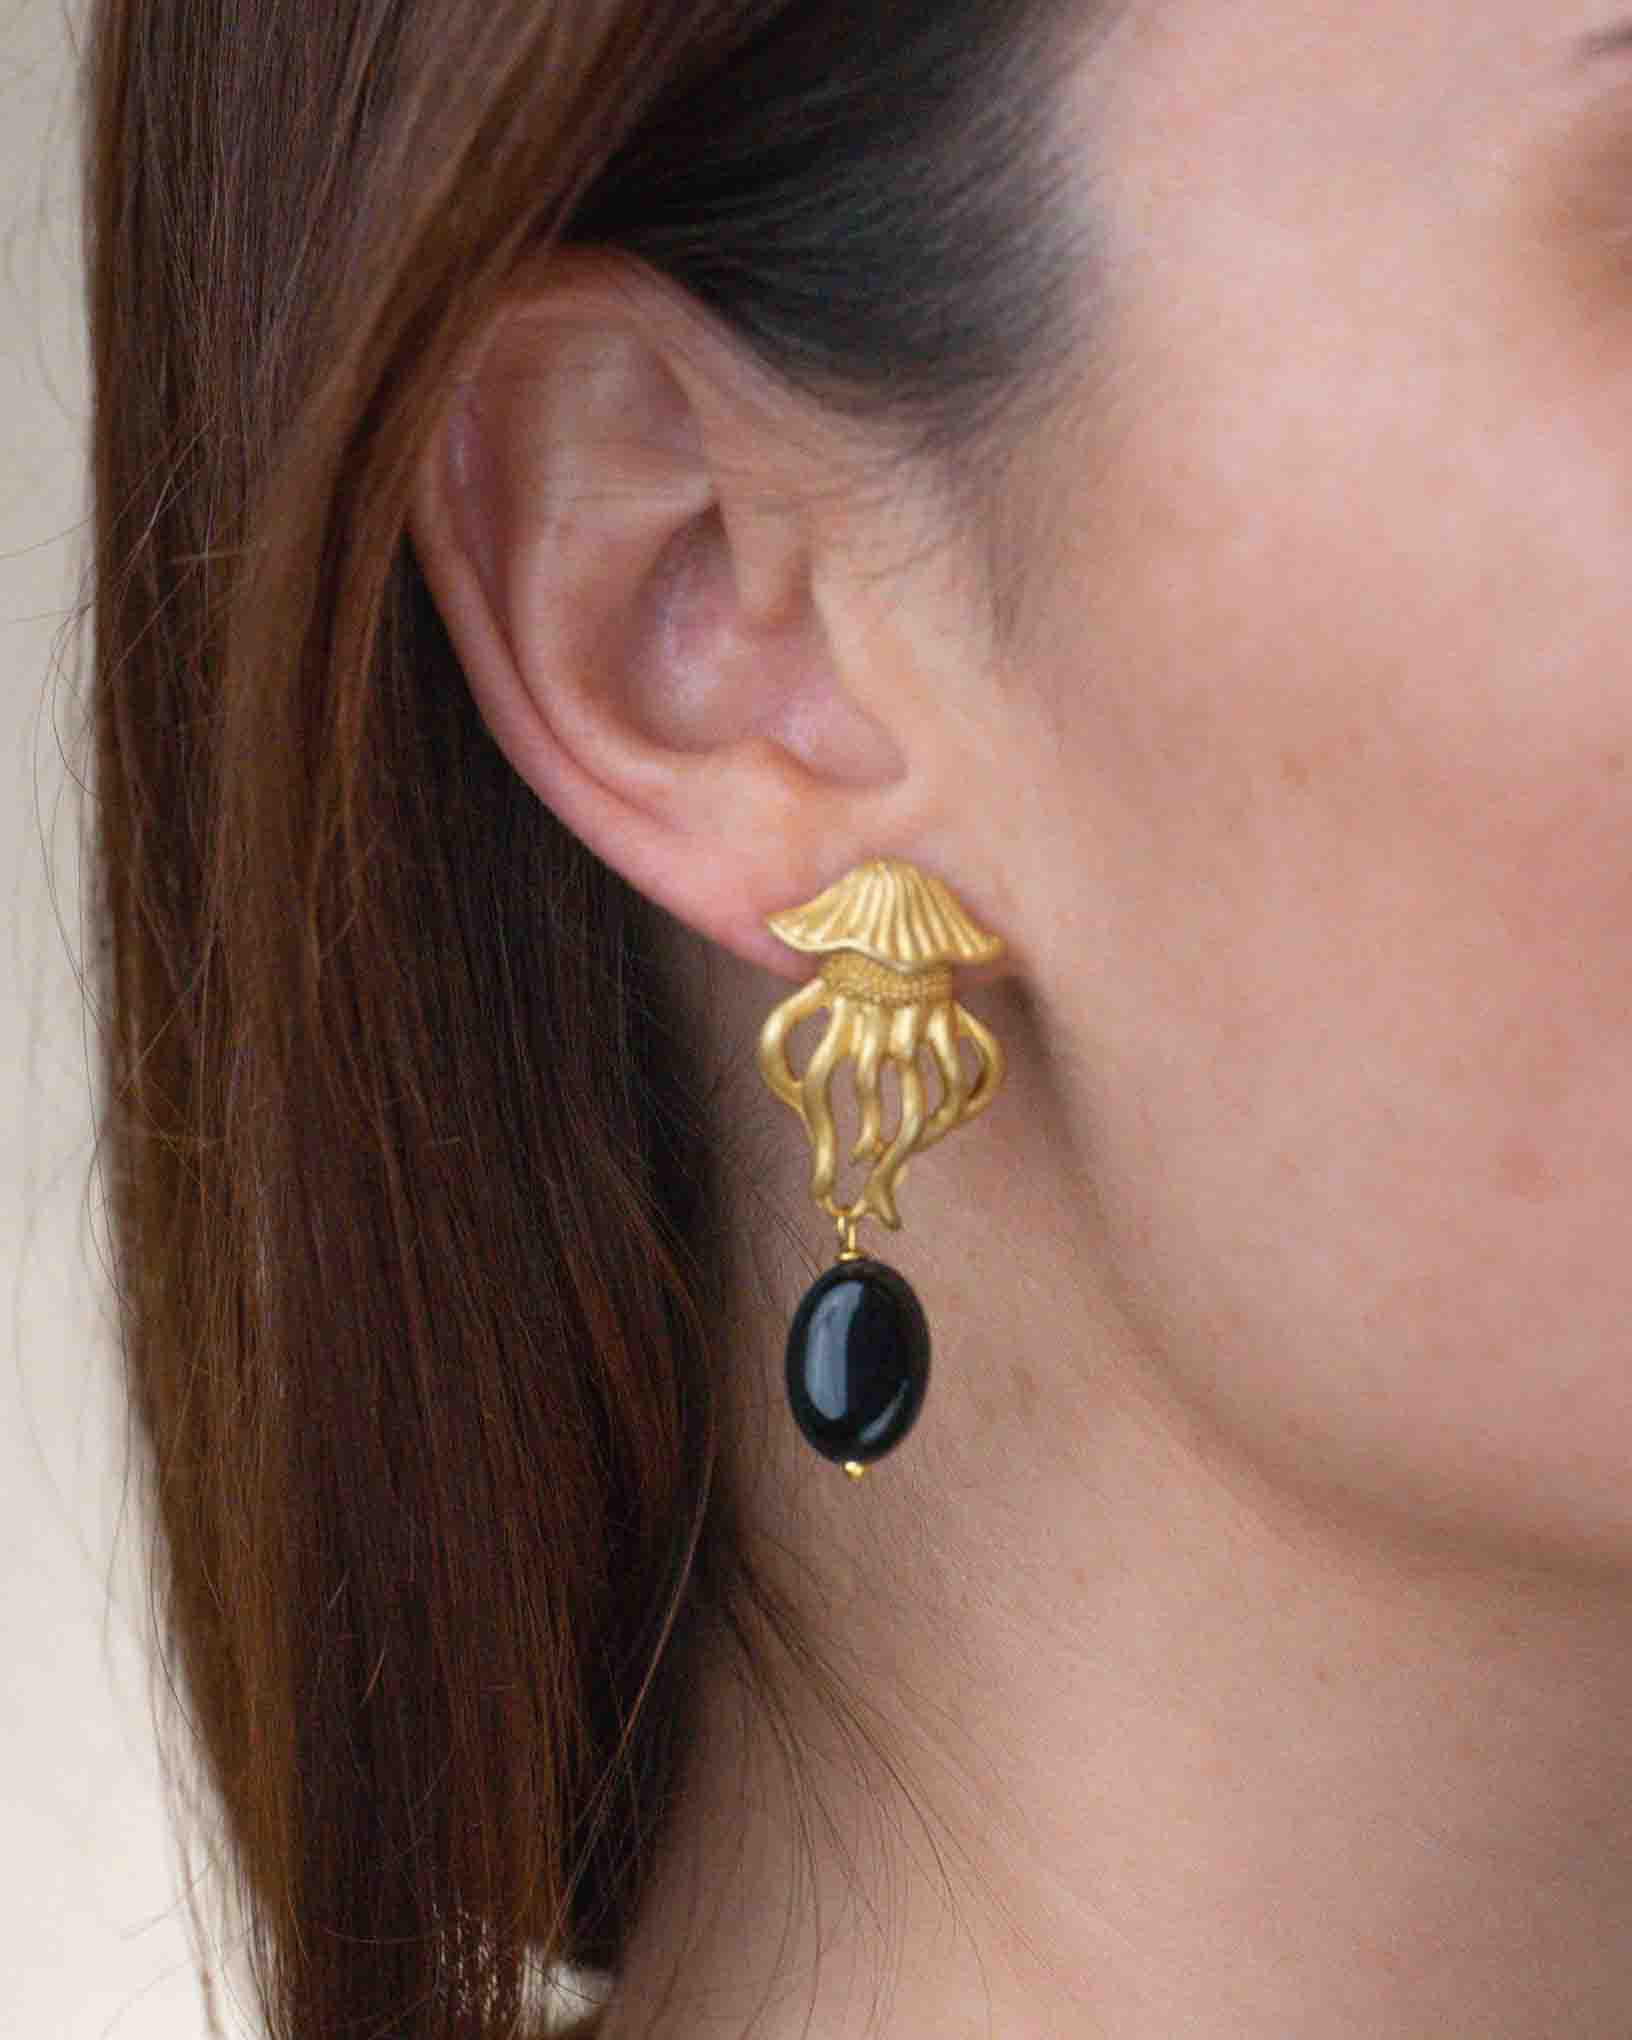 Ohrring Medusa Nera aus der Kollektion I Classici von Donna Rachele Jewelry